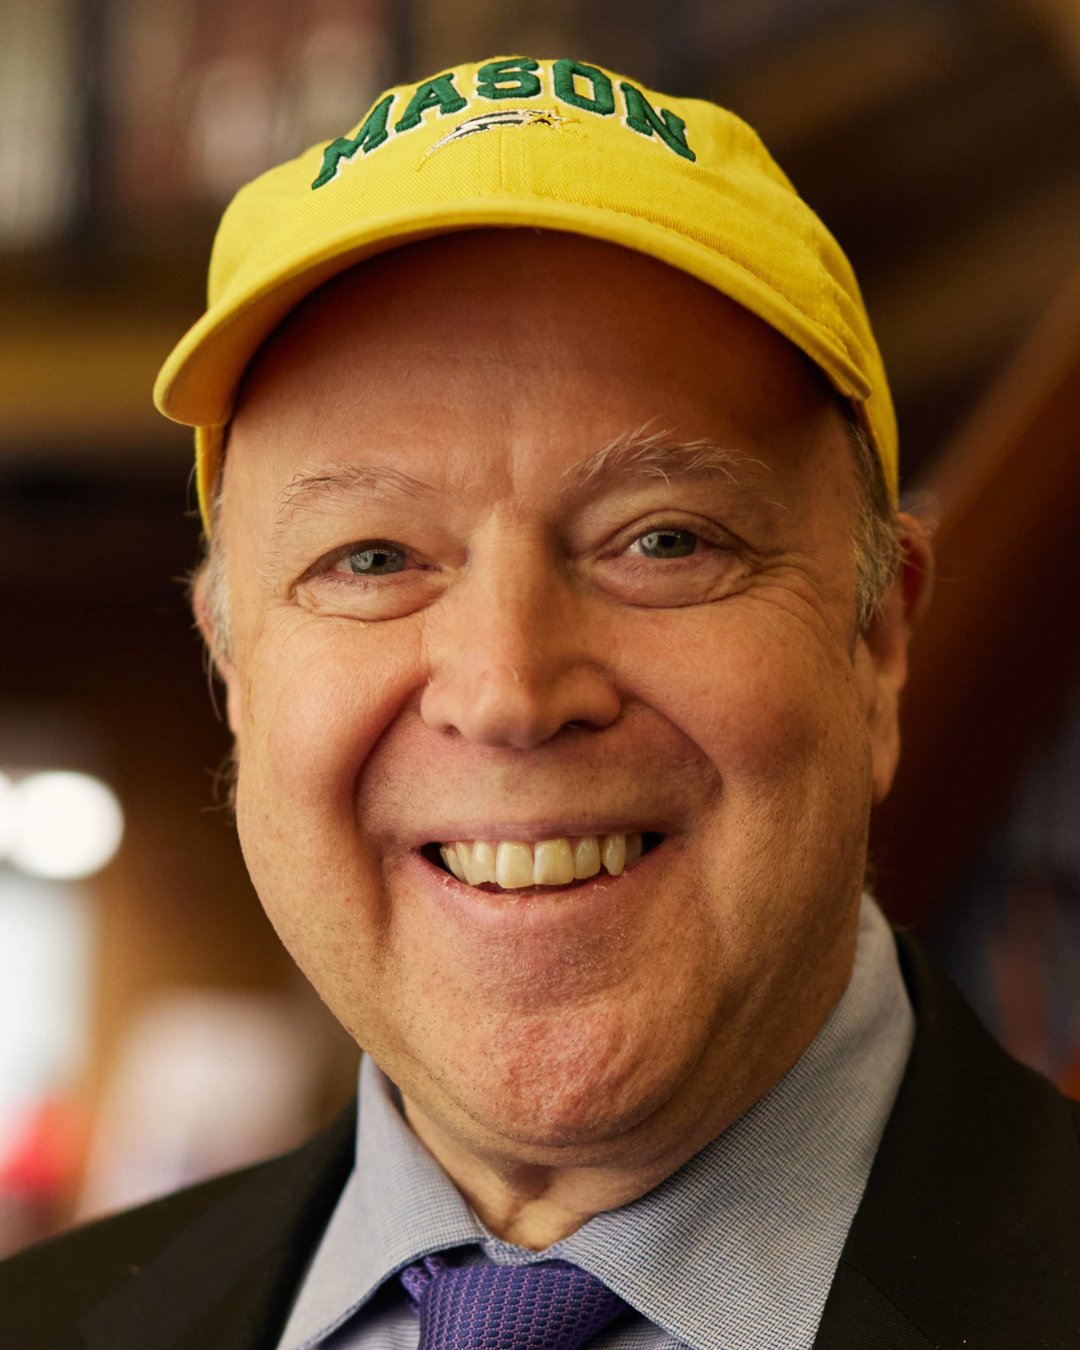 Rick Davis Headshot, wearing yellow mason hat and suit